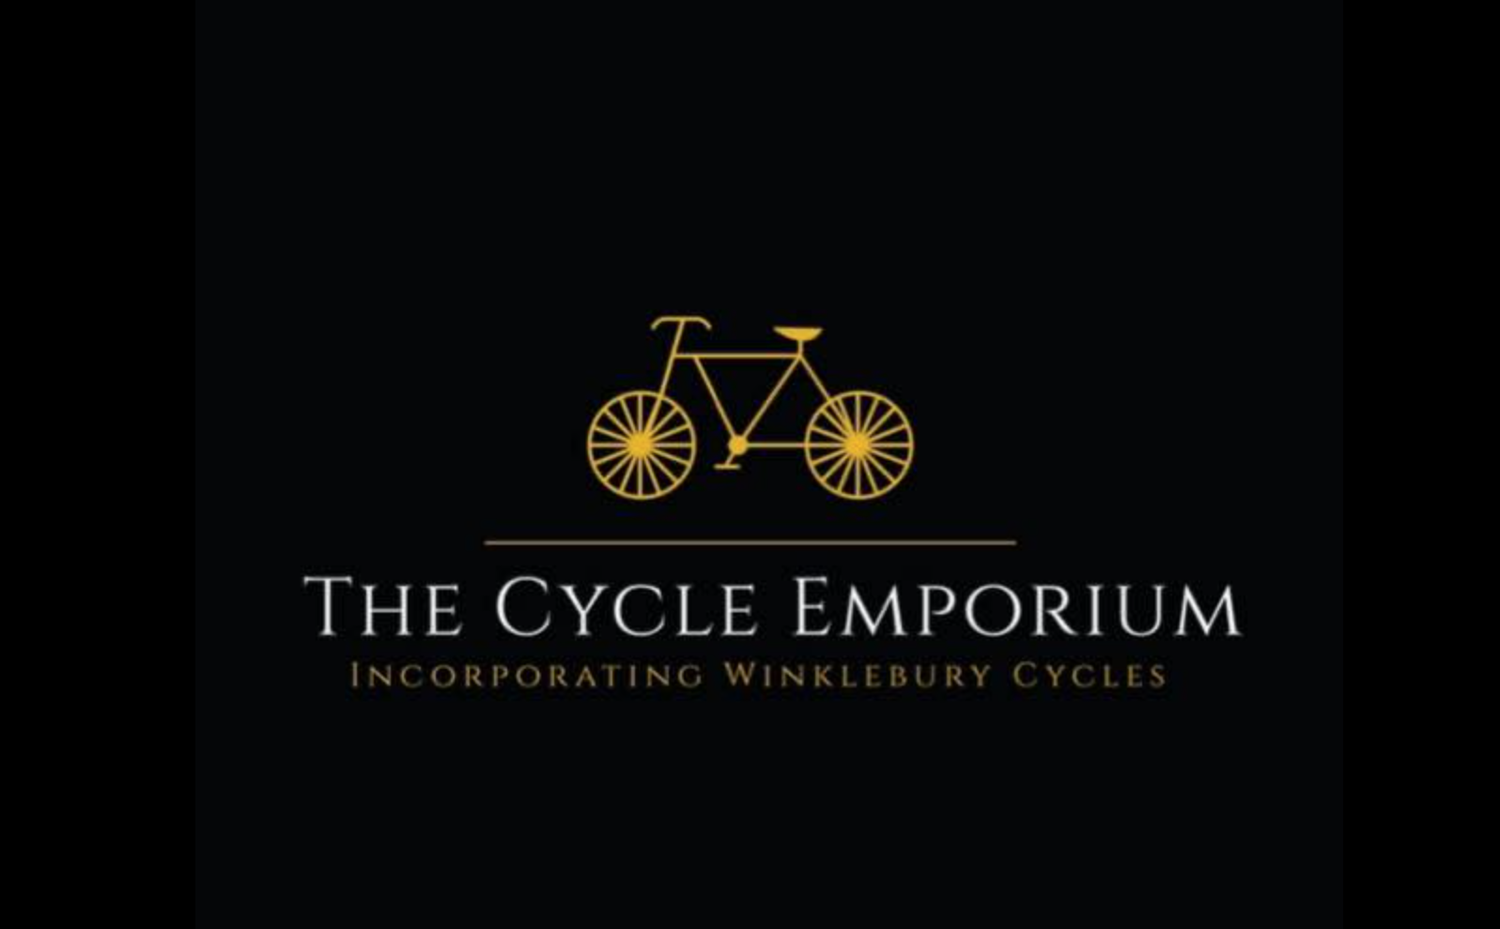 The Cycle Emporium